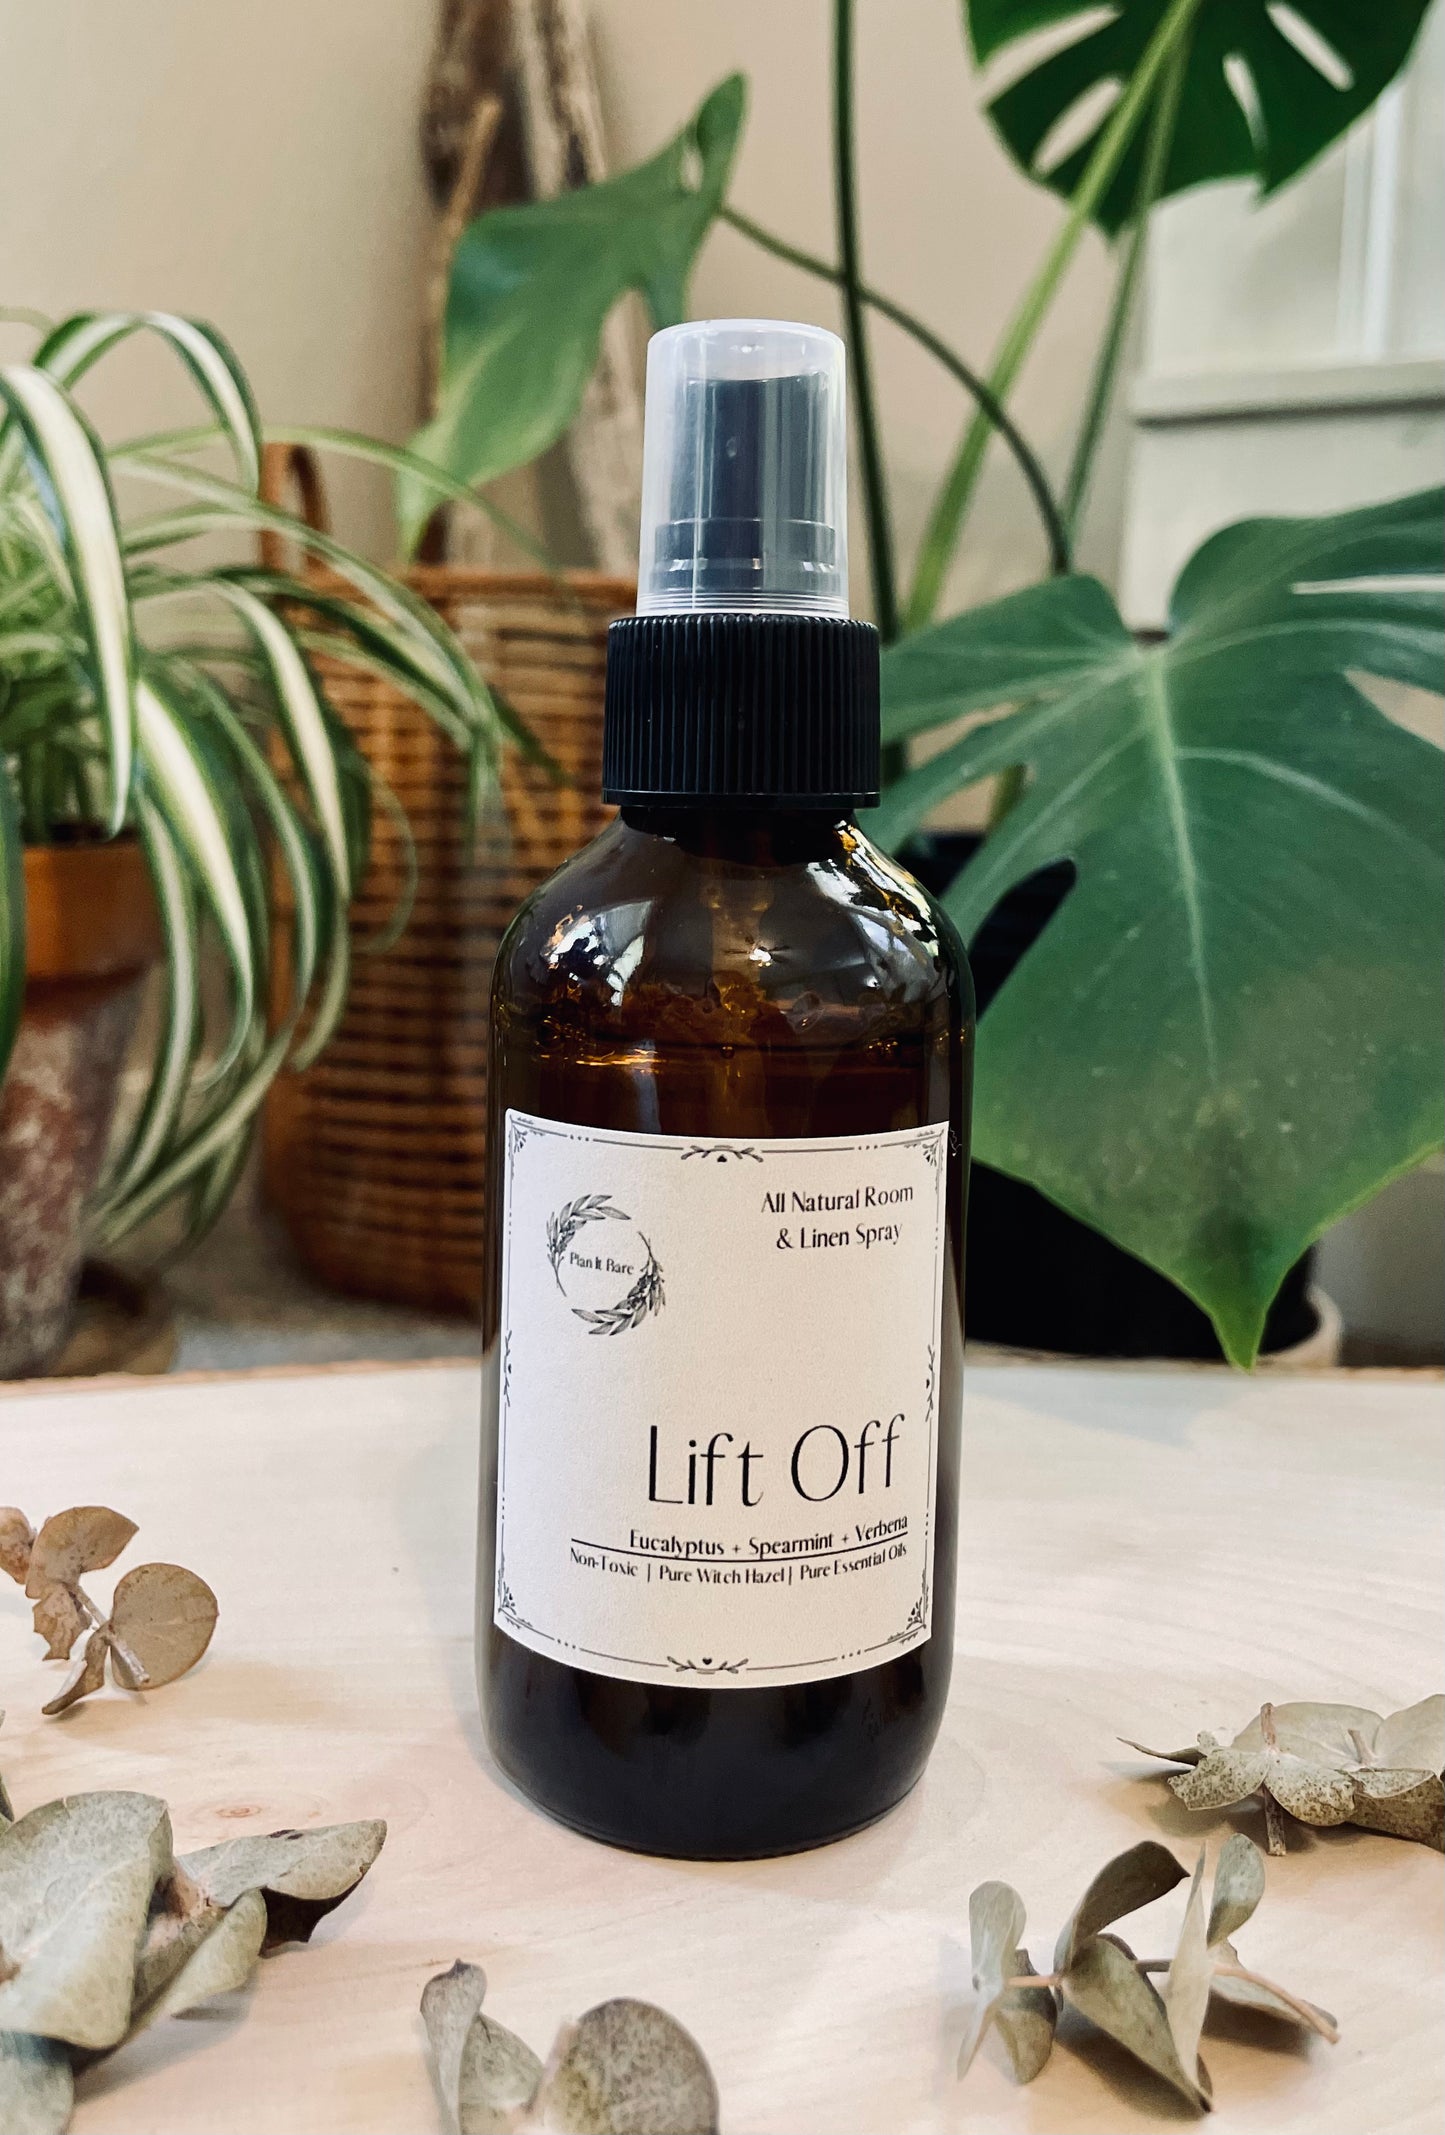 All Natural Room & Linen Spray— Lift Off